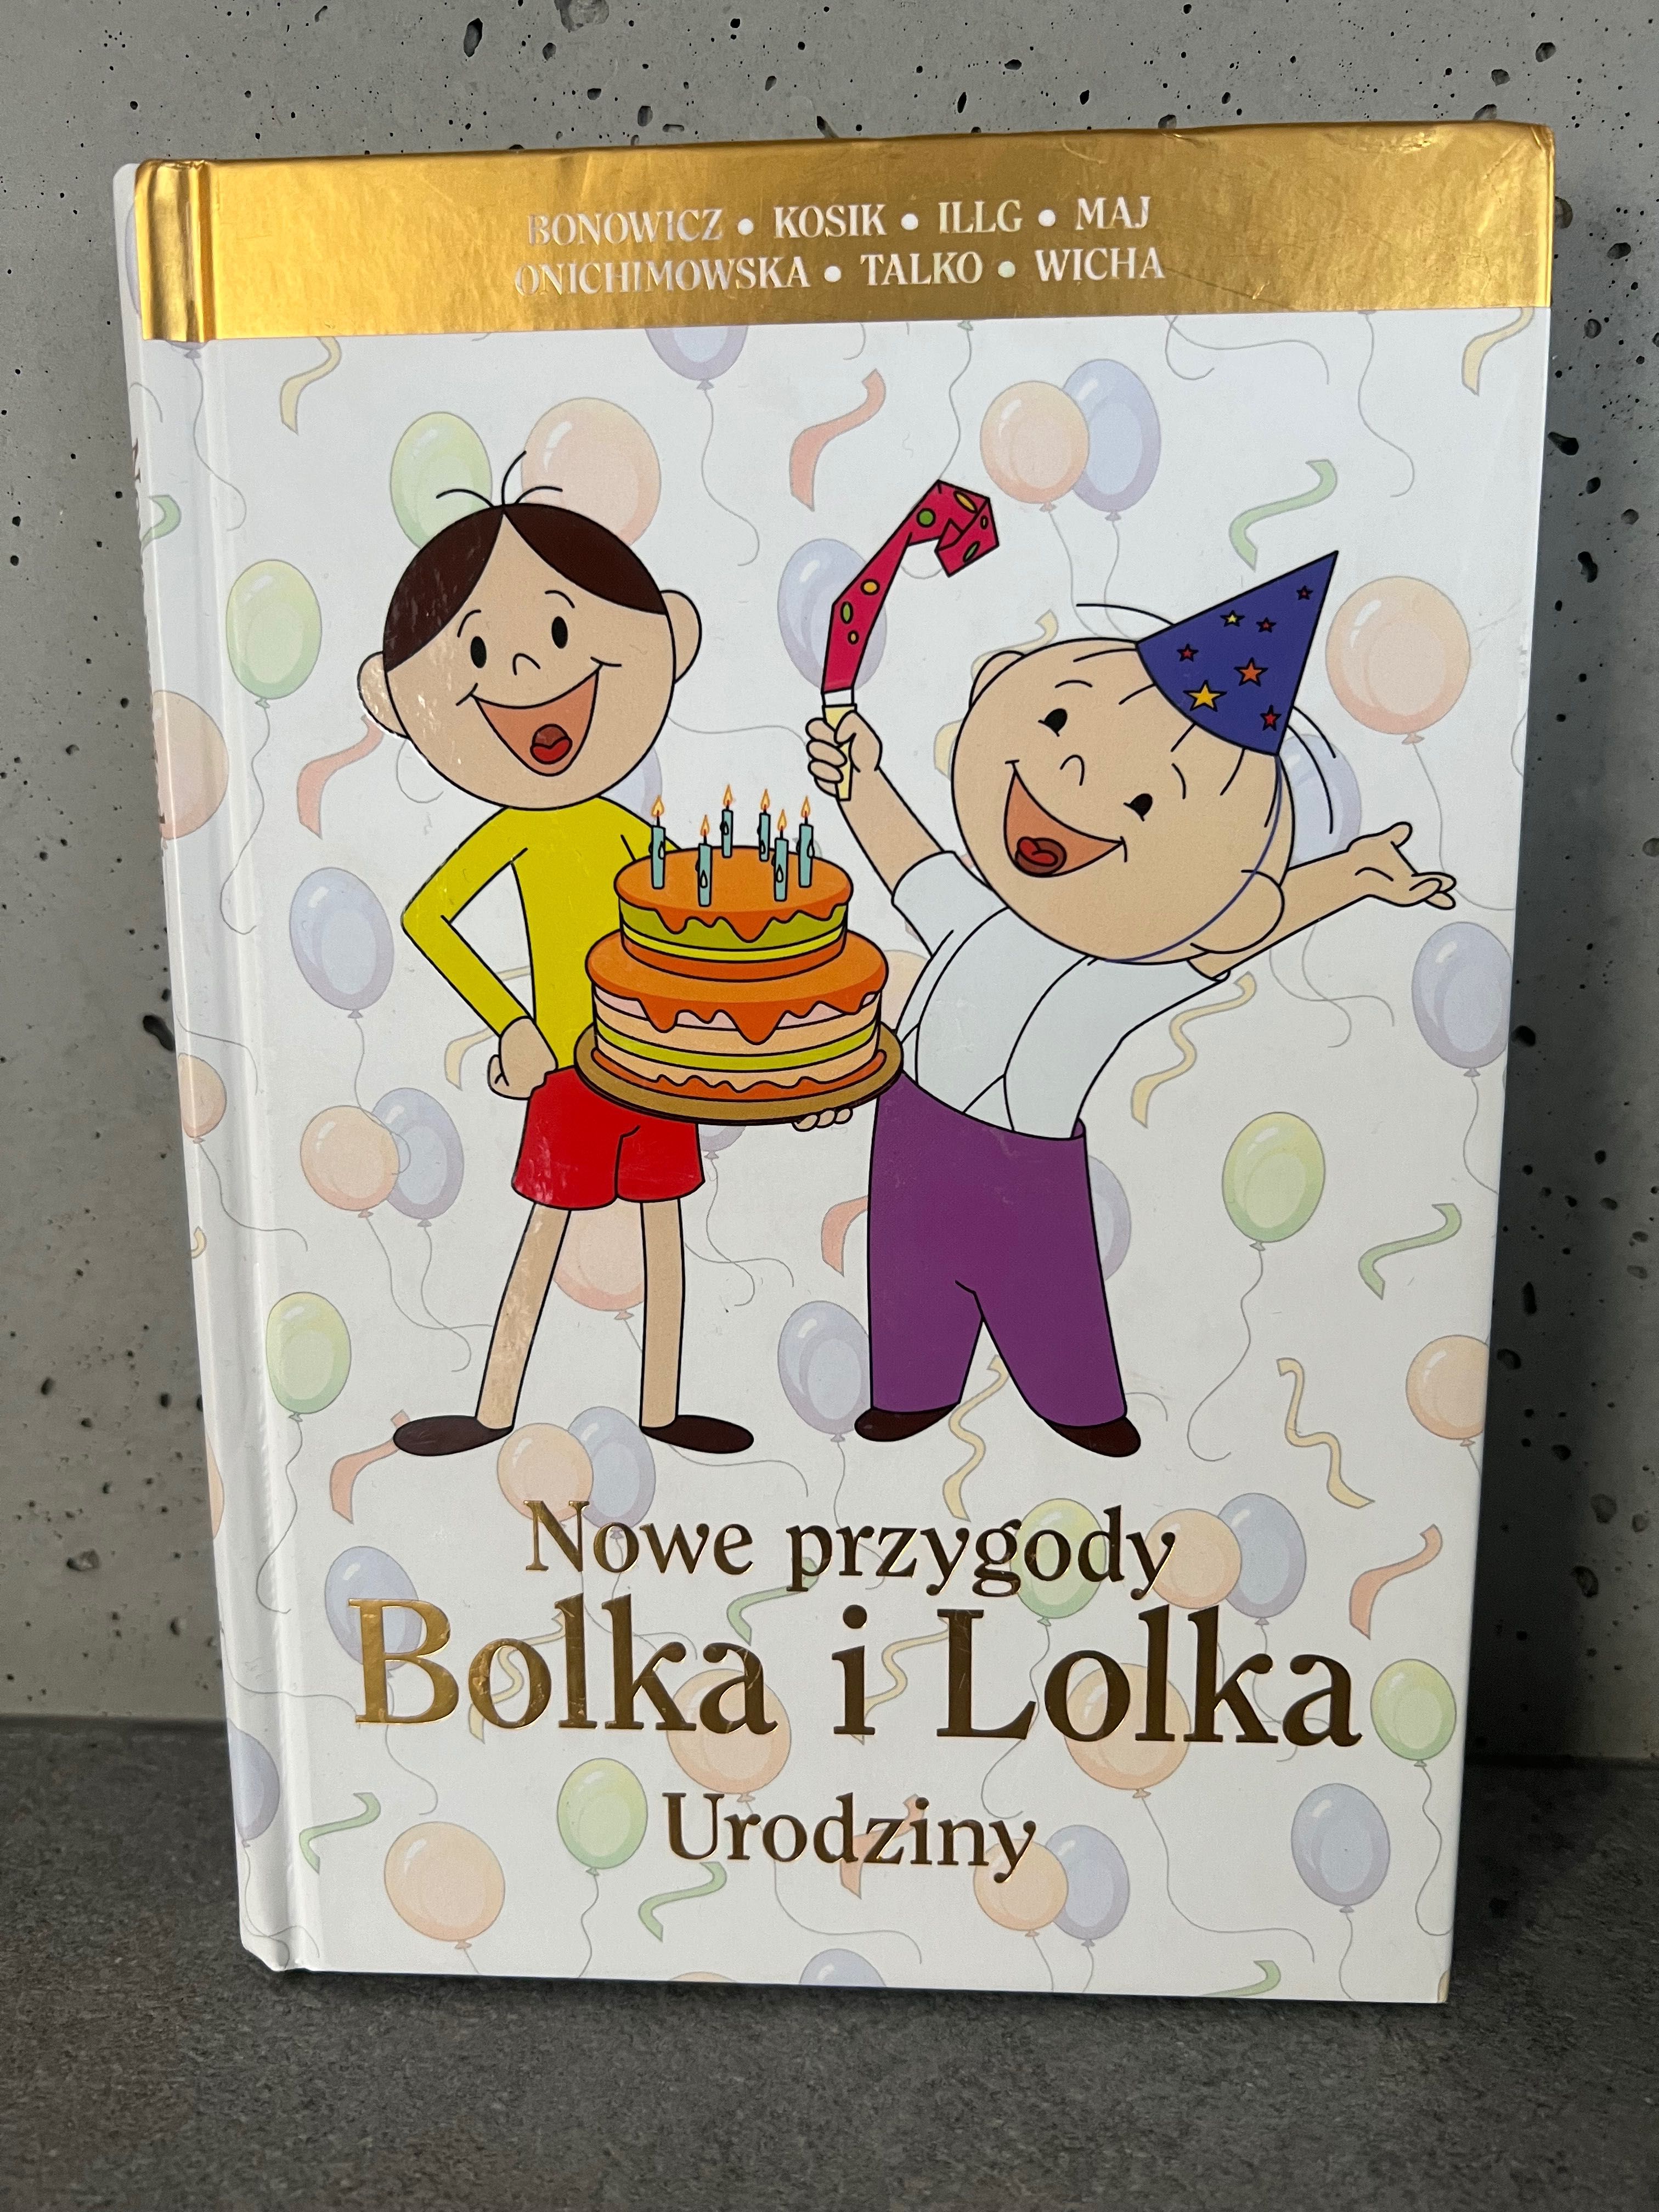 Książka dla dzieci Nowe przygody Bolka i Lolka. Urodziny